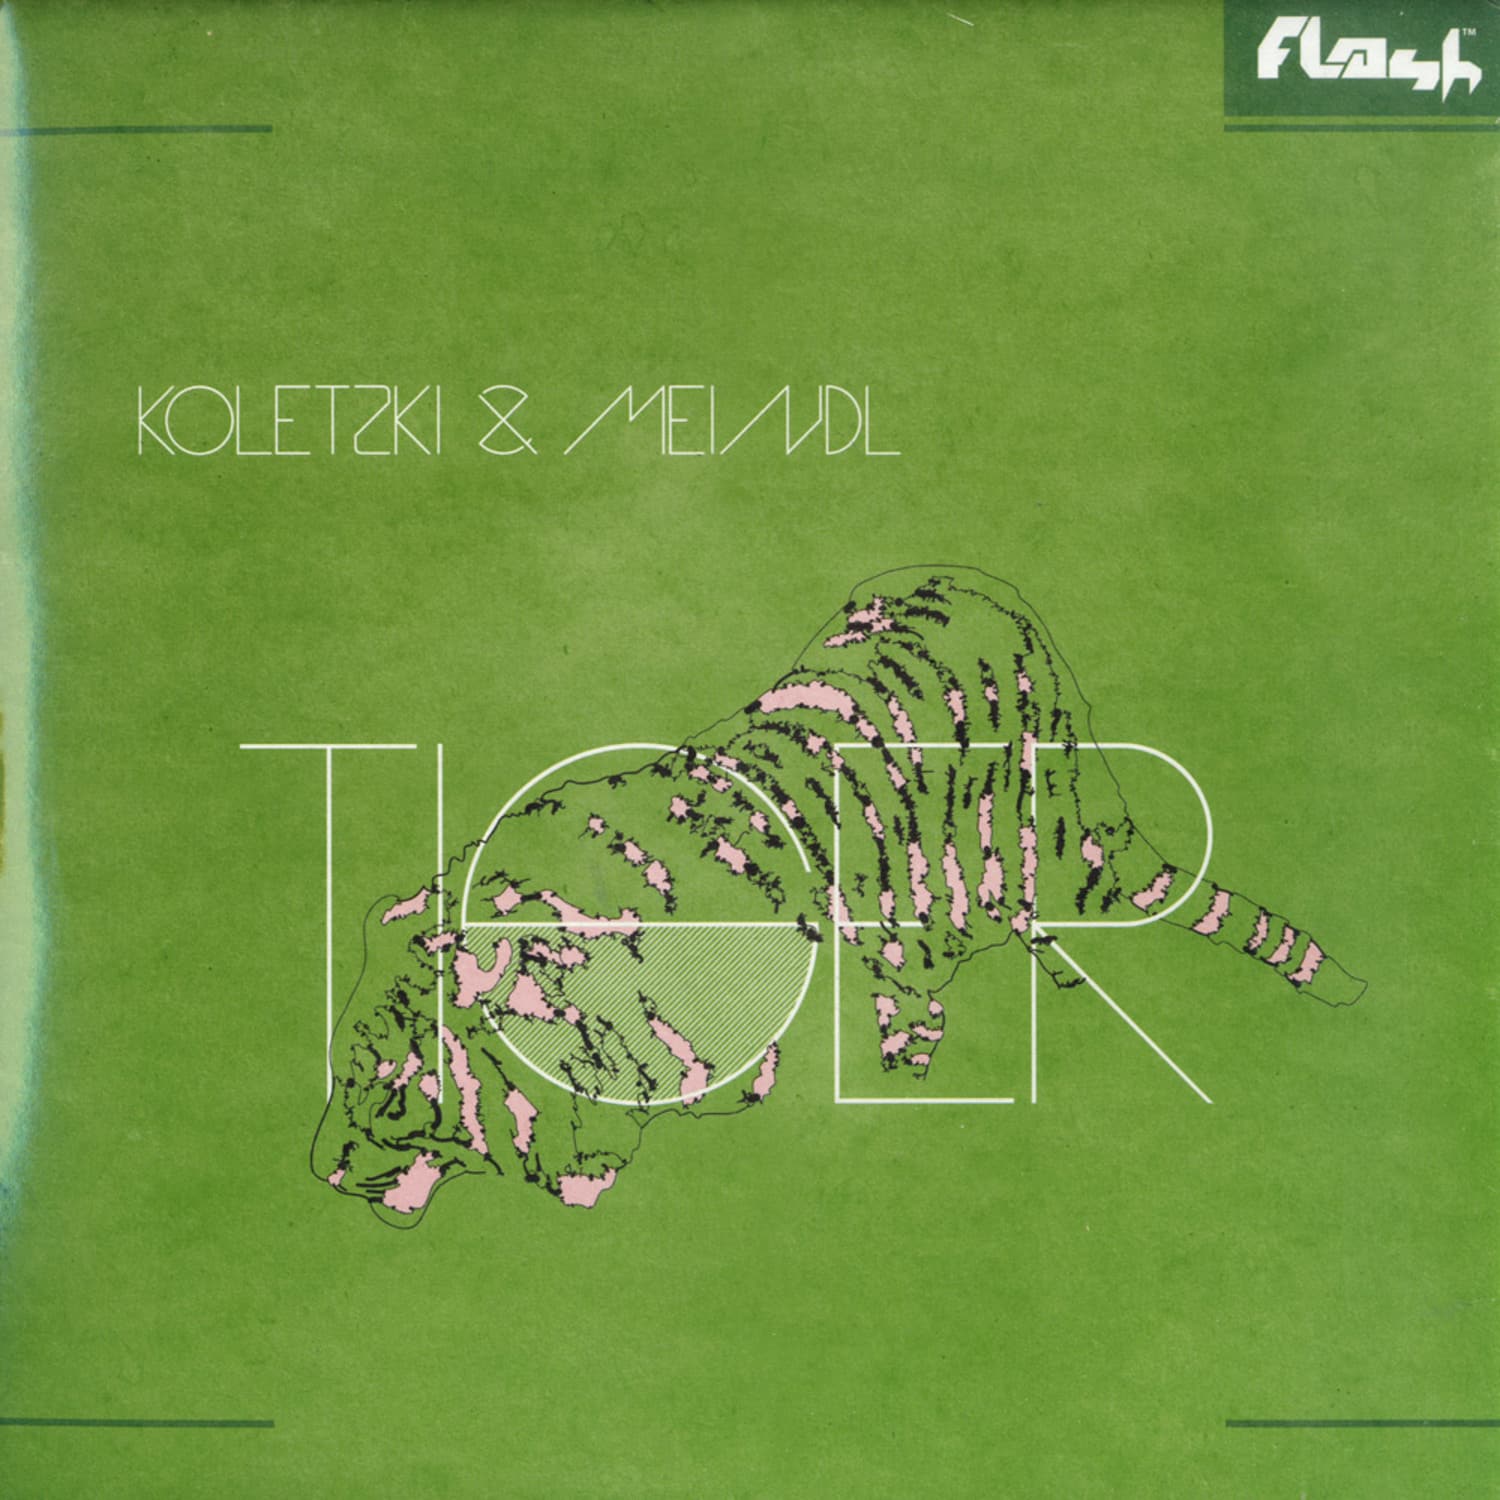 Koletzki & Meindl - TIGER EP